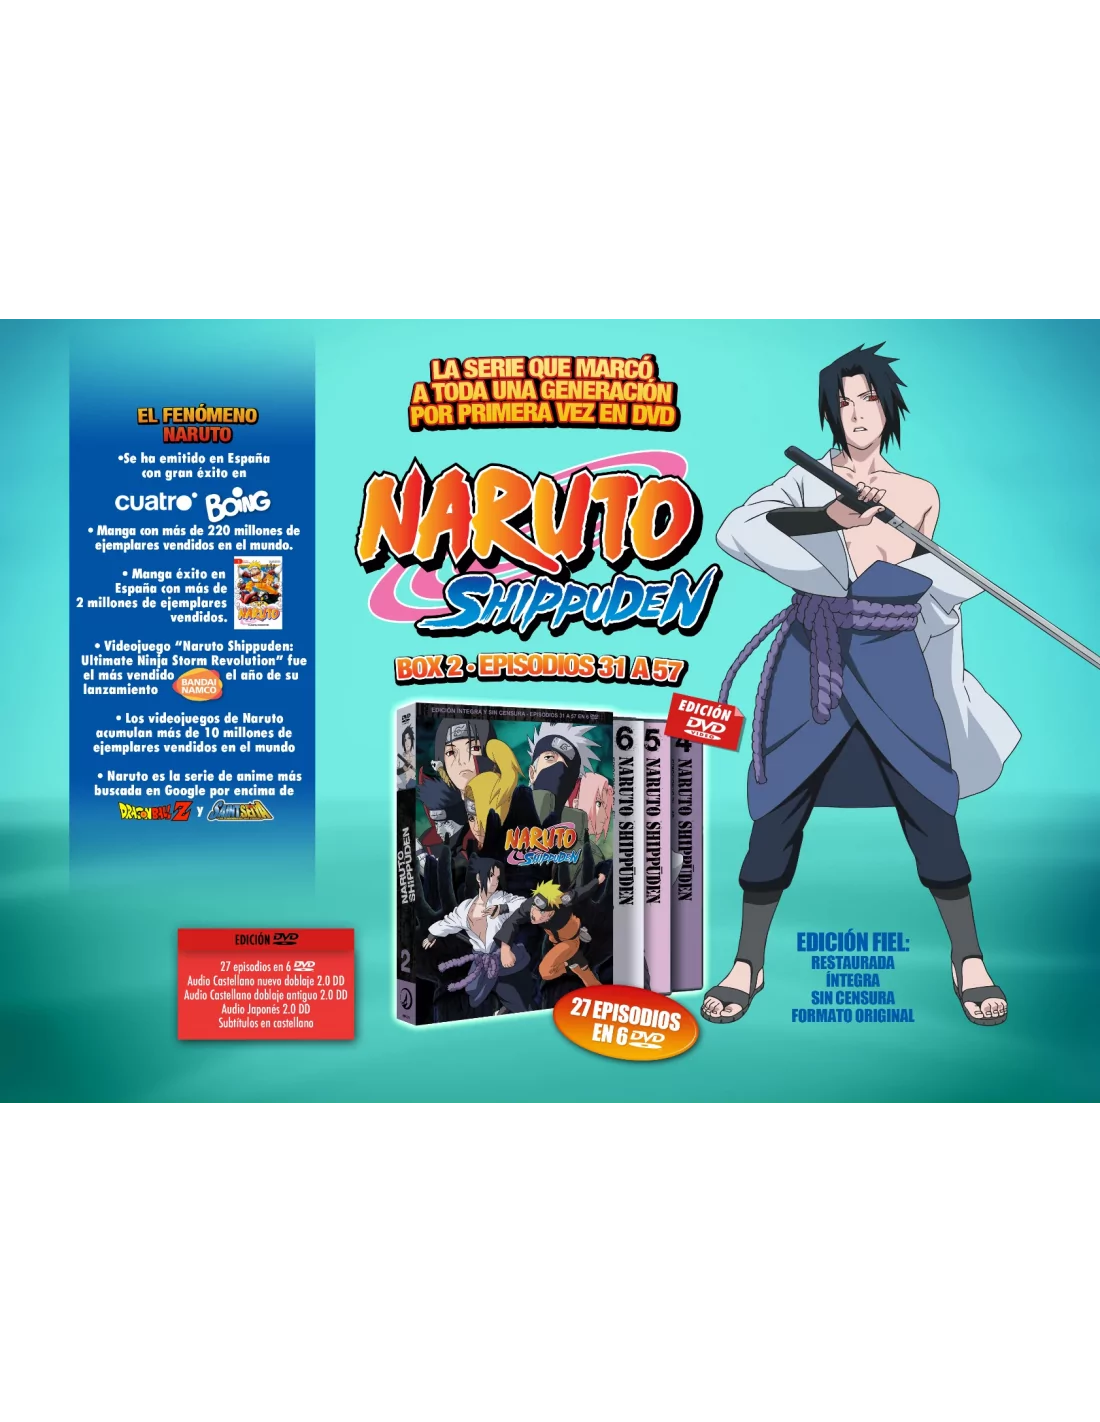 Sebo do Messias DVD - Naruto Shippuden - 2 Temporada - Box 1 *5 Dvds*